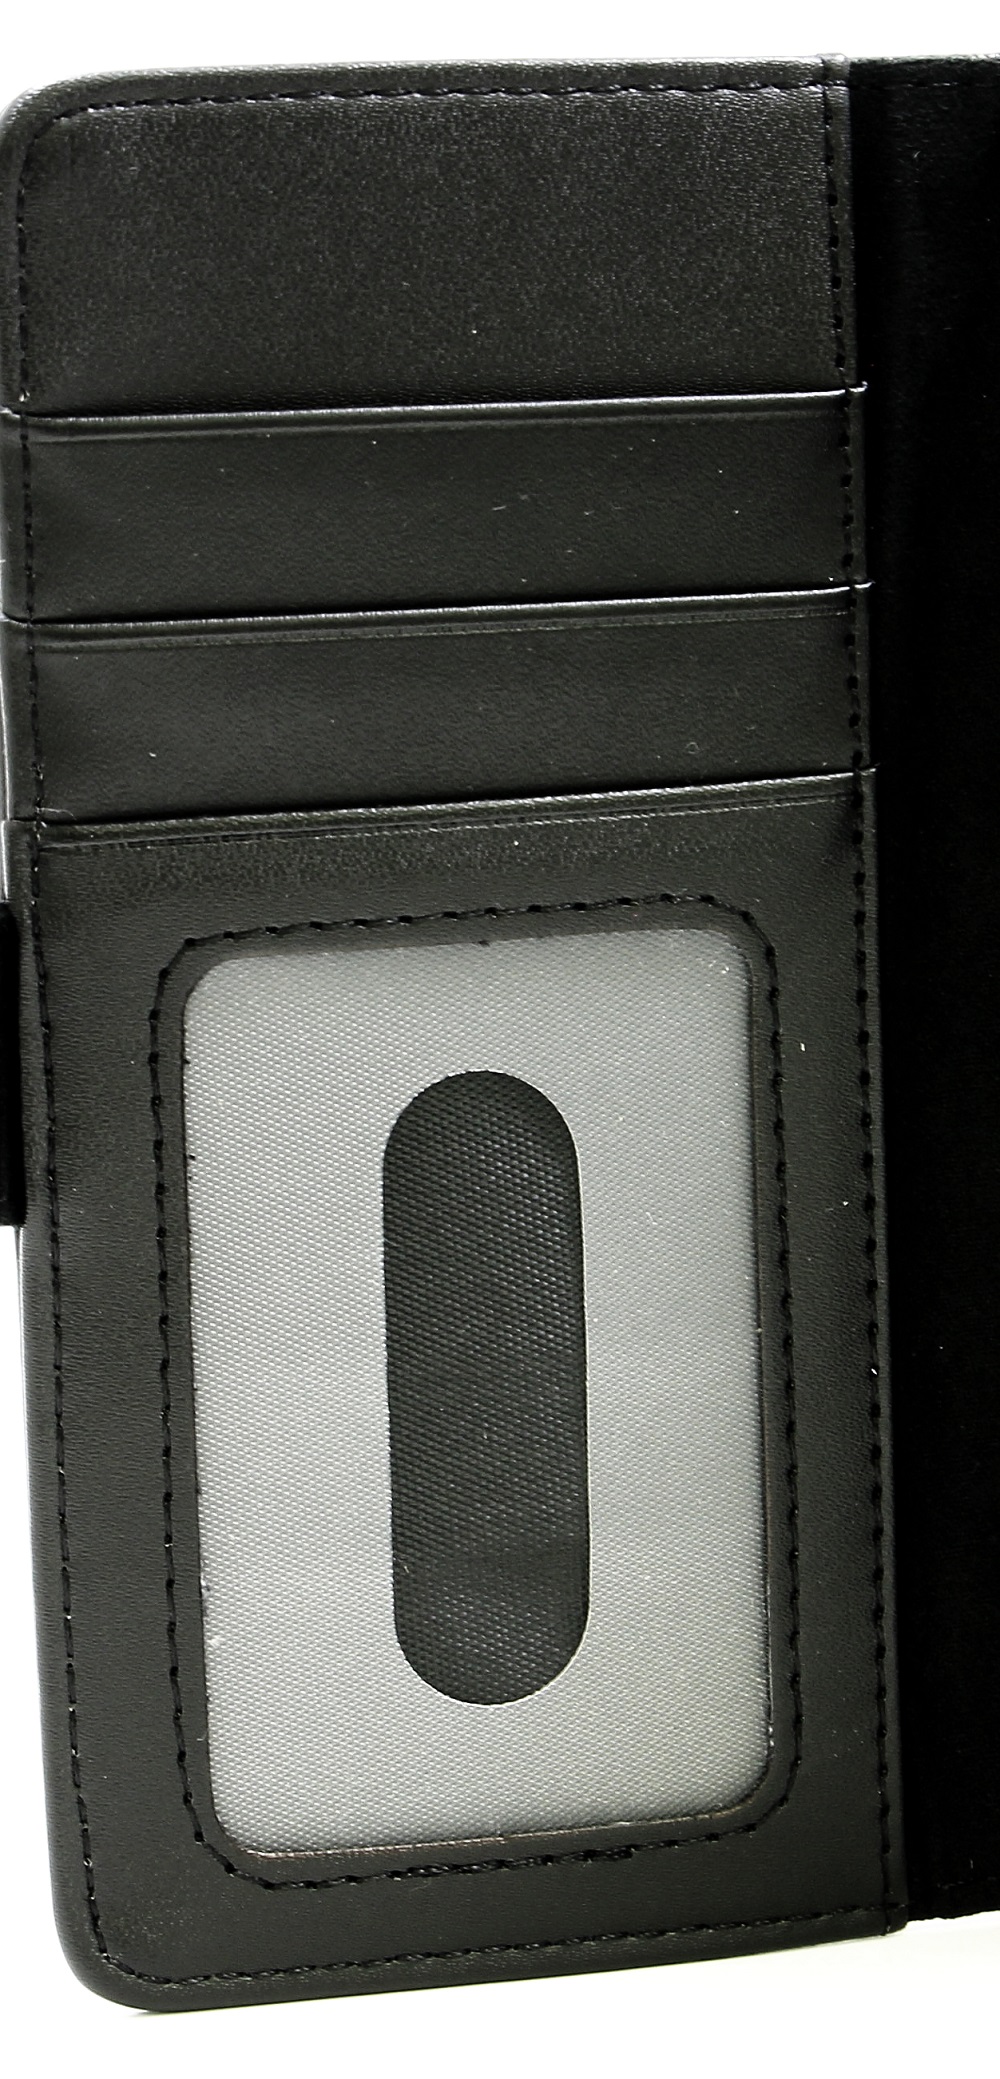 CoverIn Lompakkokotelot Sony Xperia XA1 (G3121)